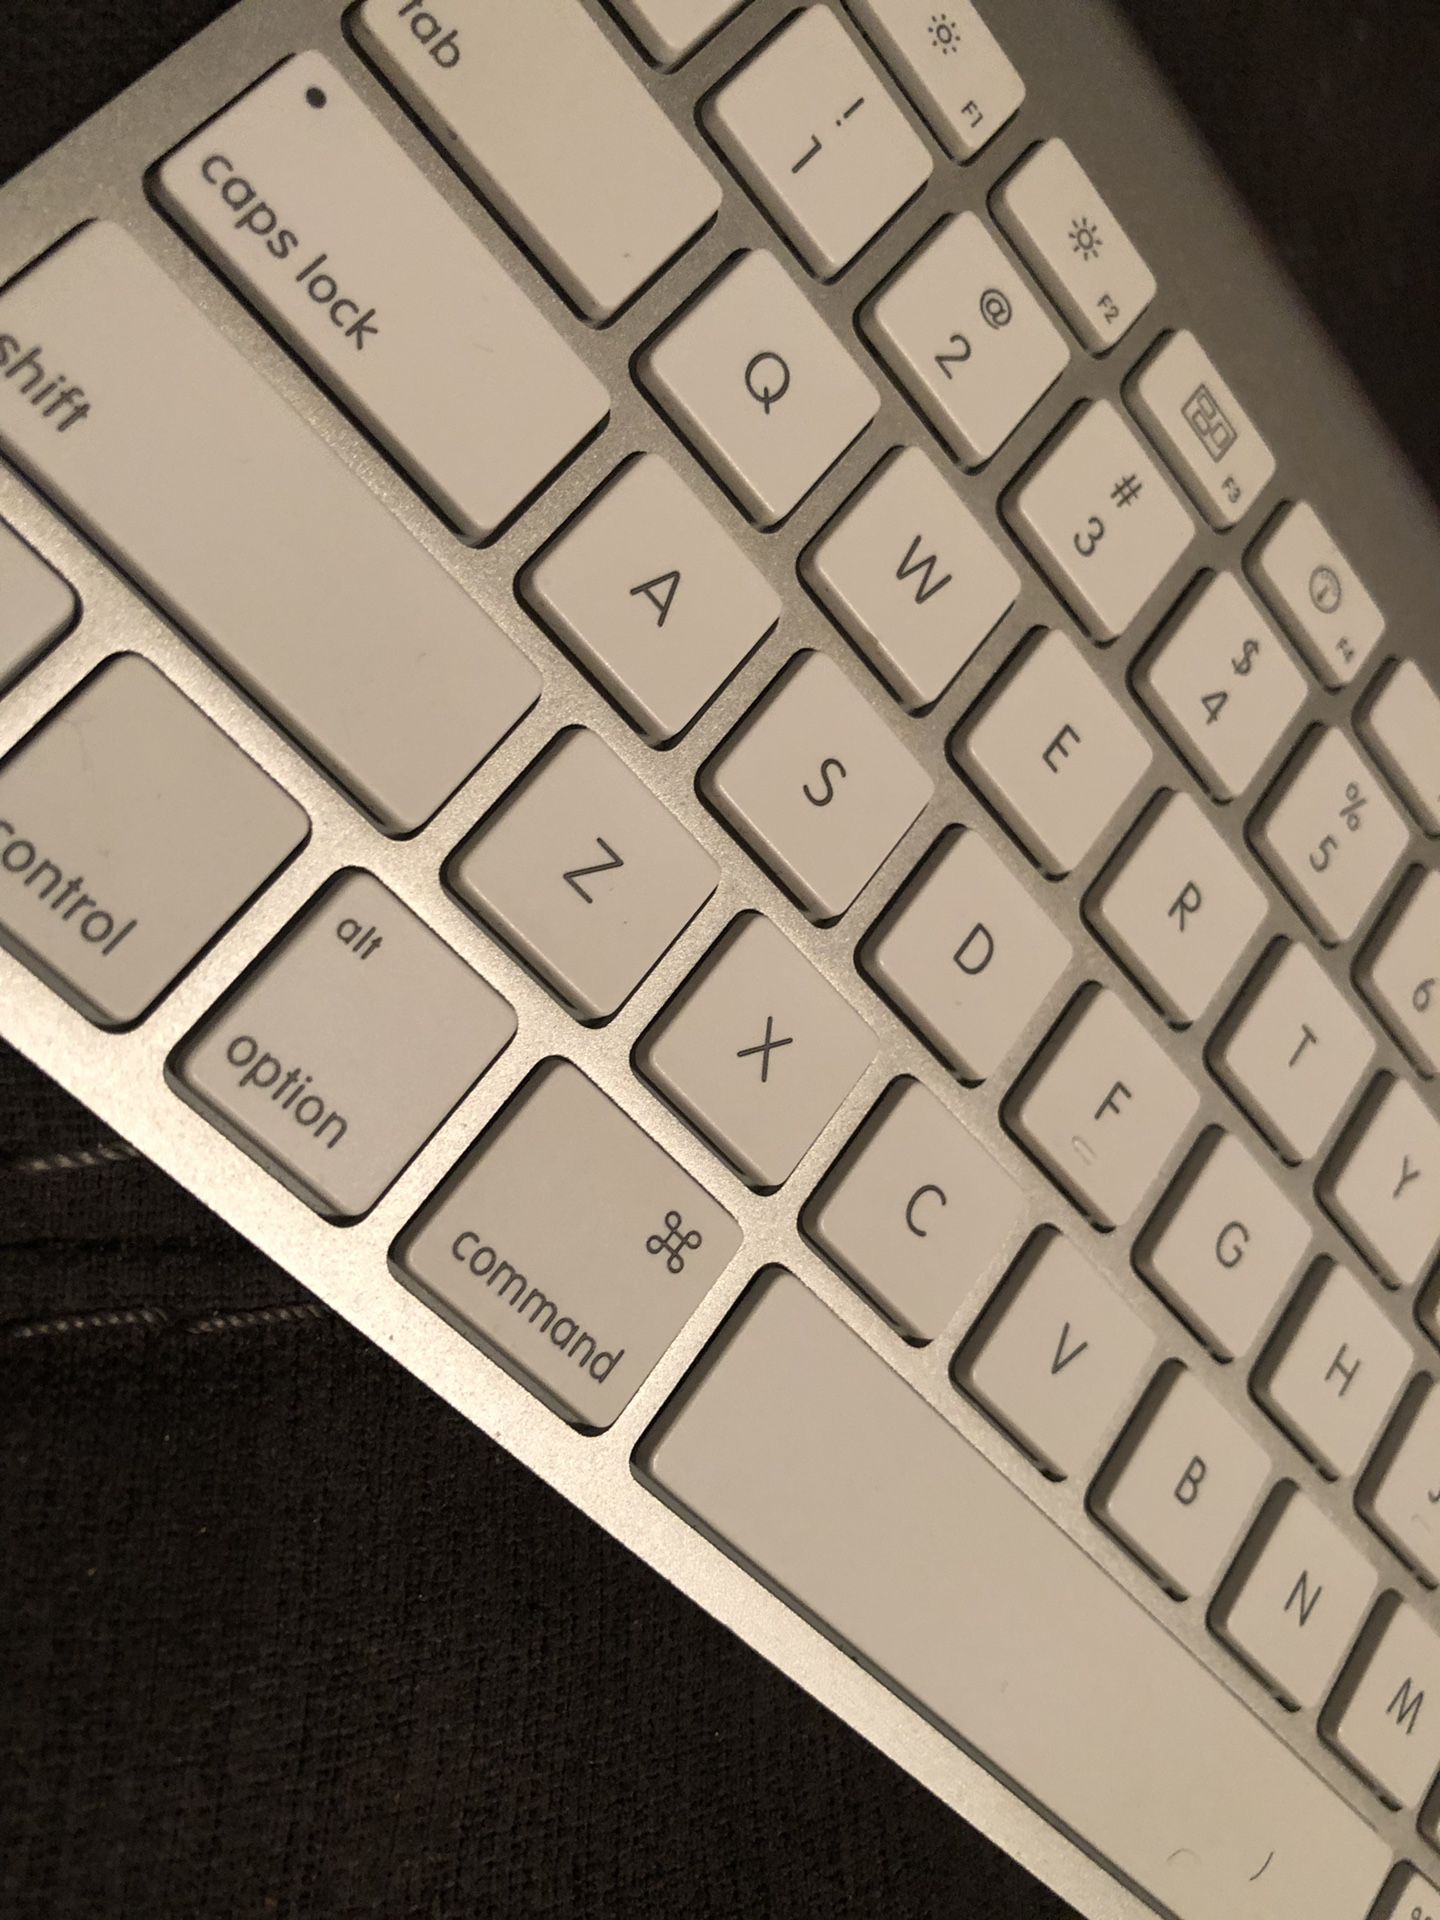 Apple Wireless Keyboard & mouse